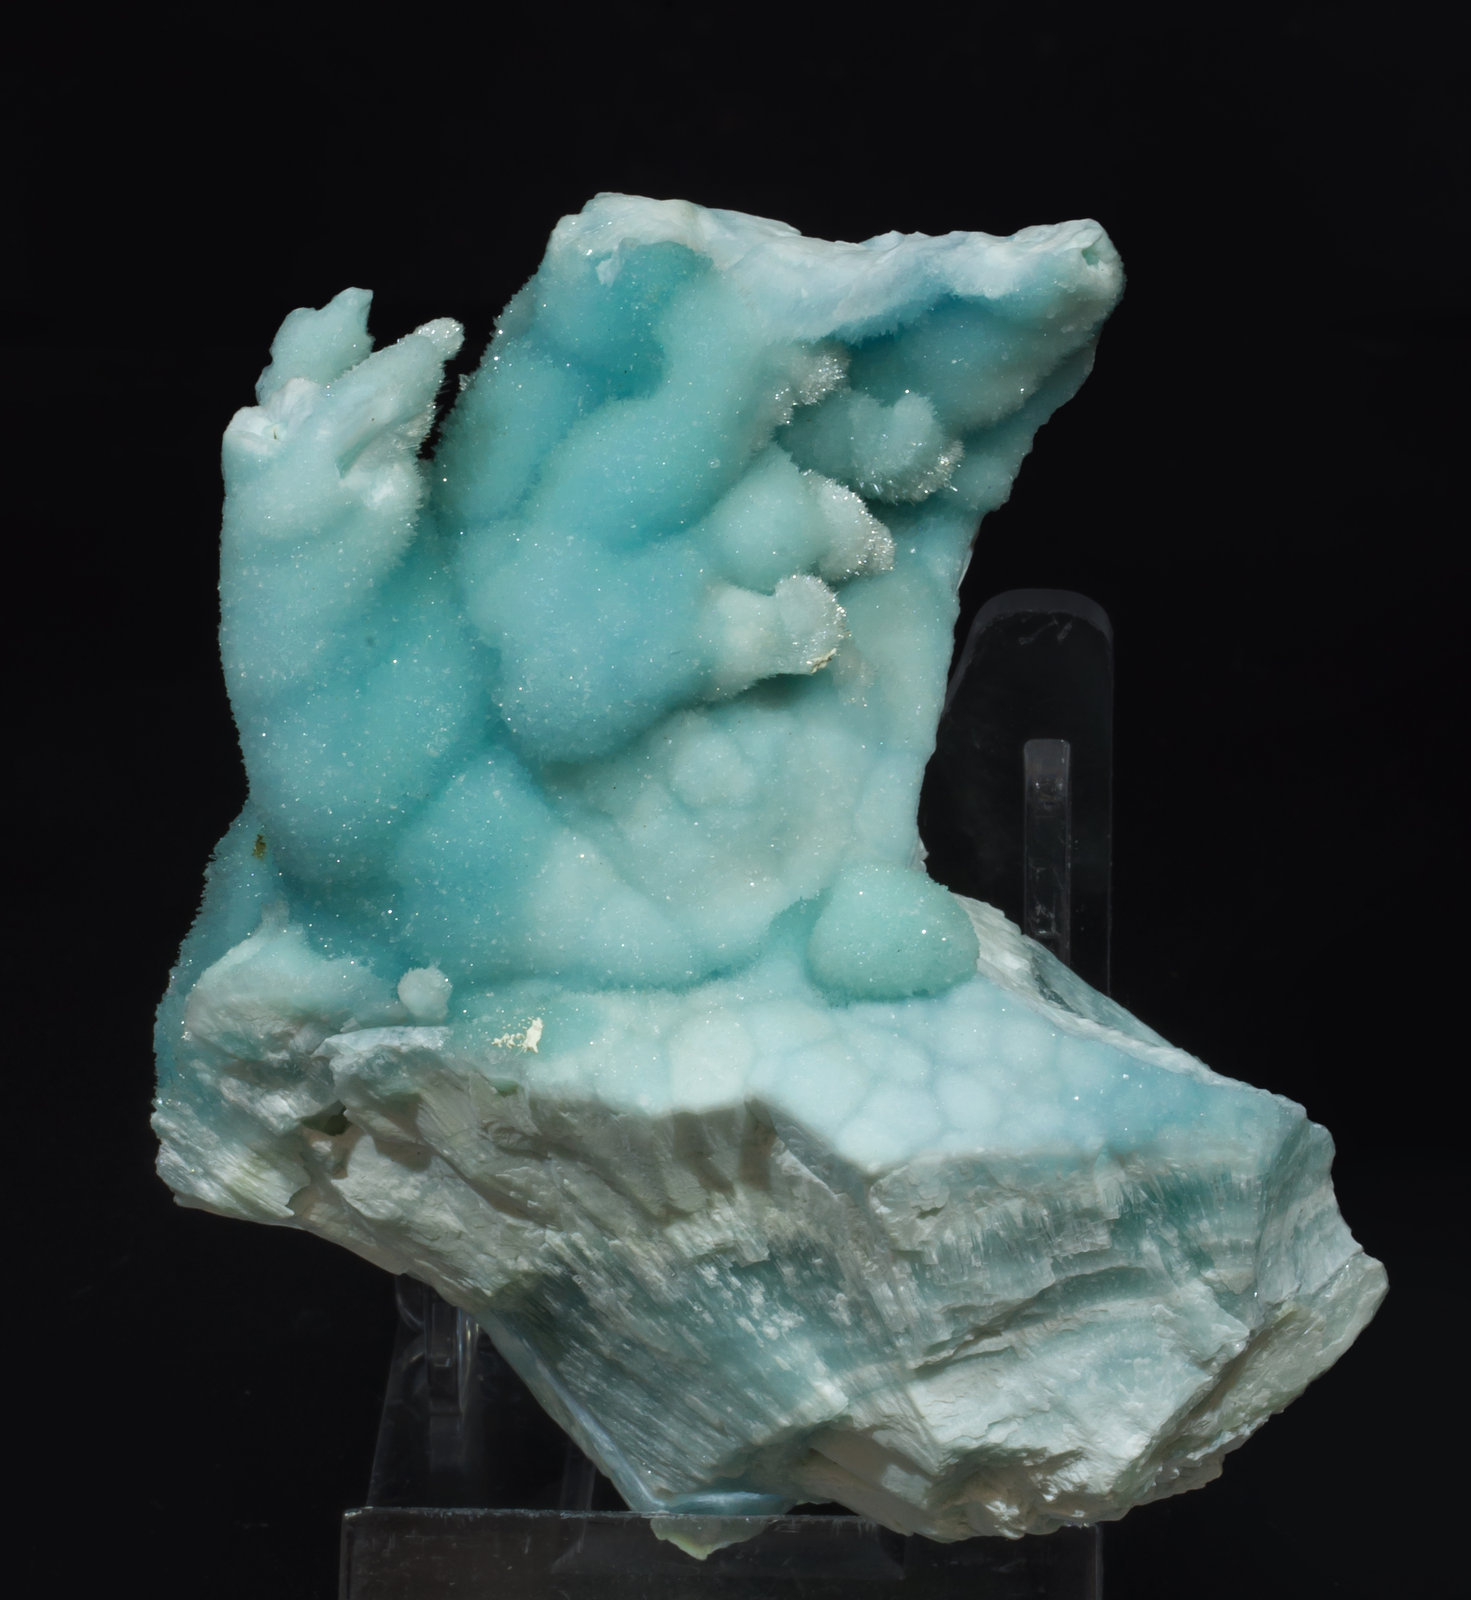 specimens/s_imagesAH6/Aragonite-CT36AH6f.jpg